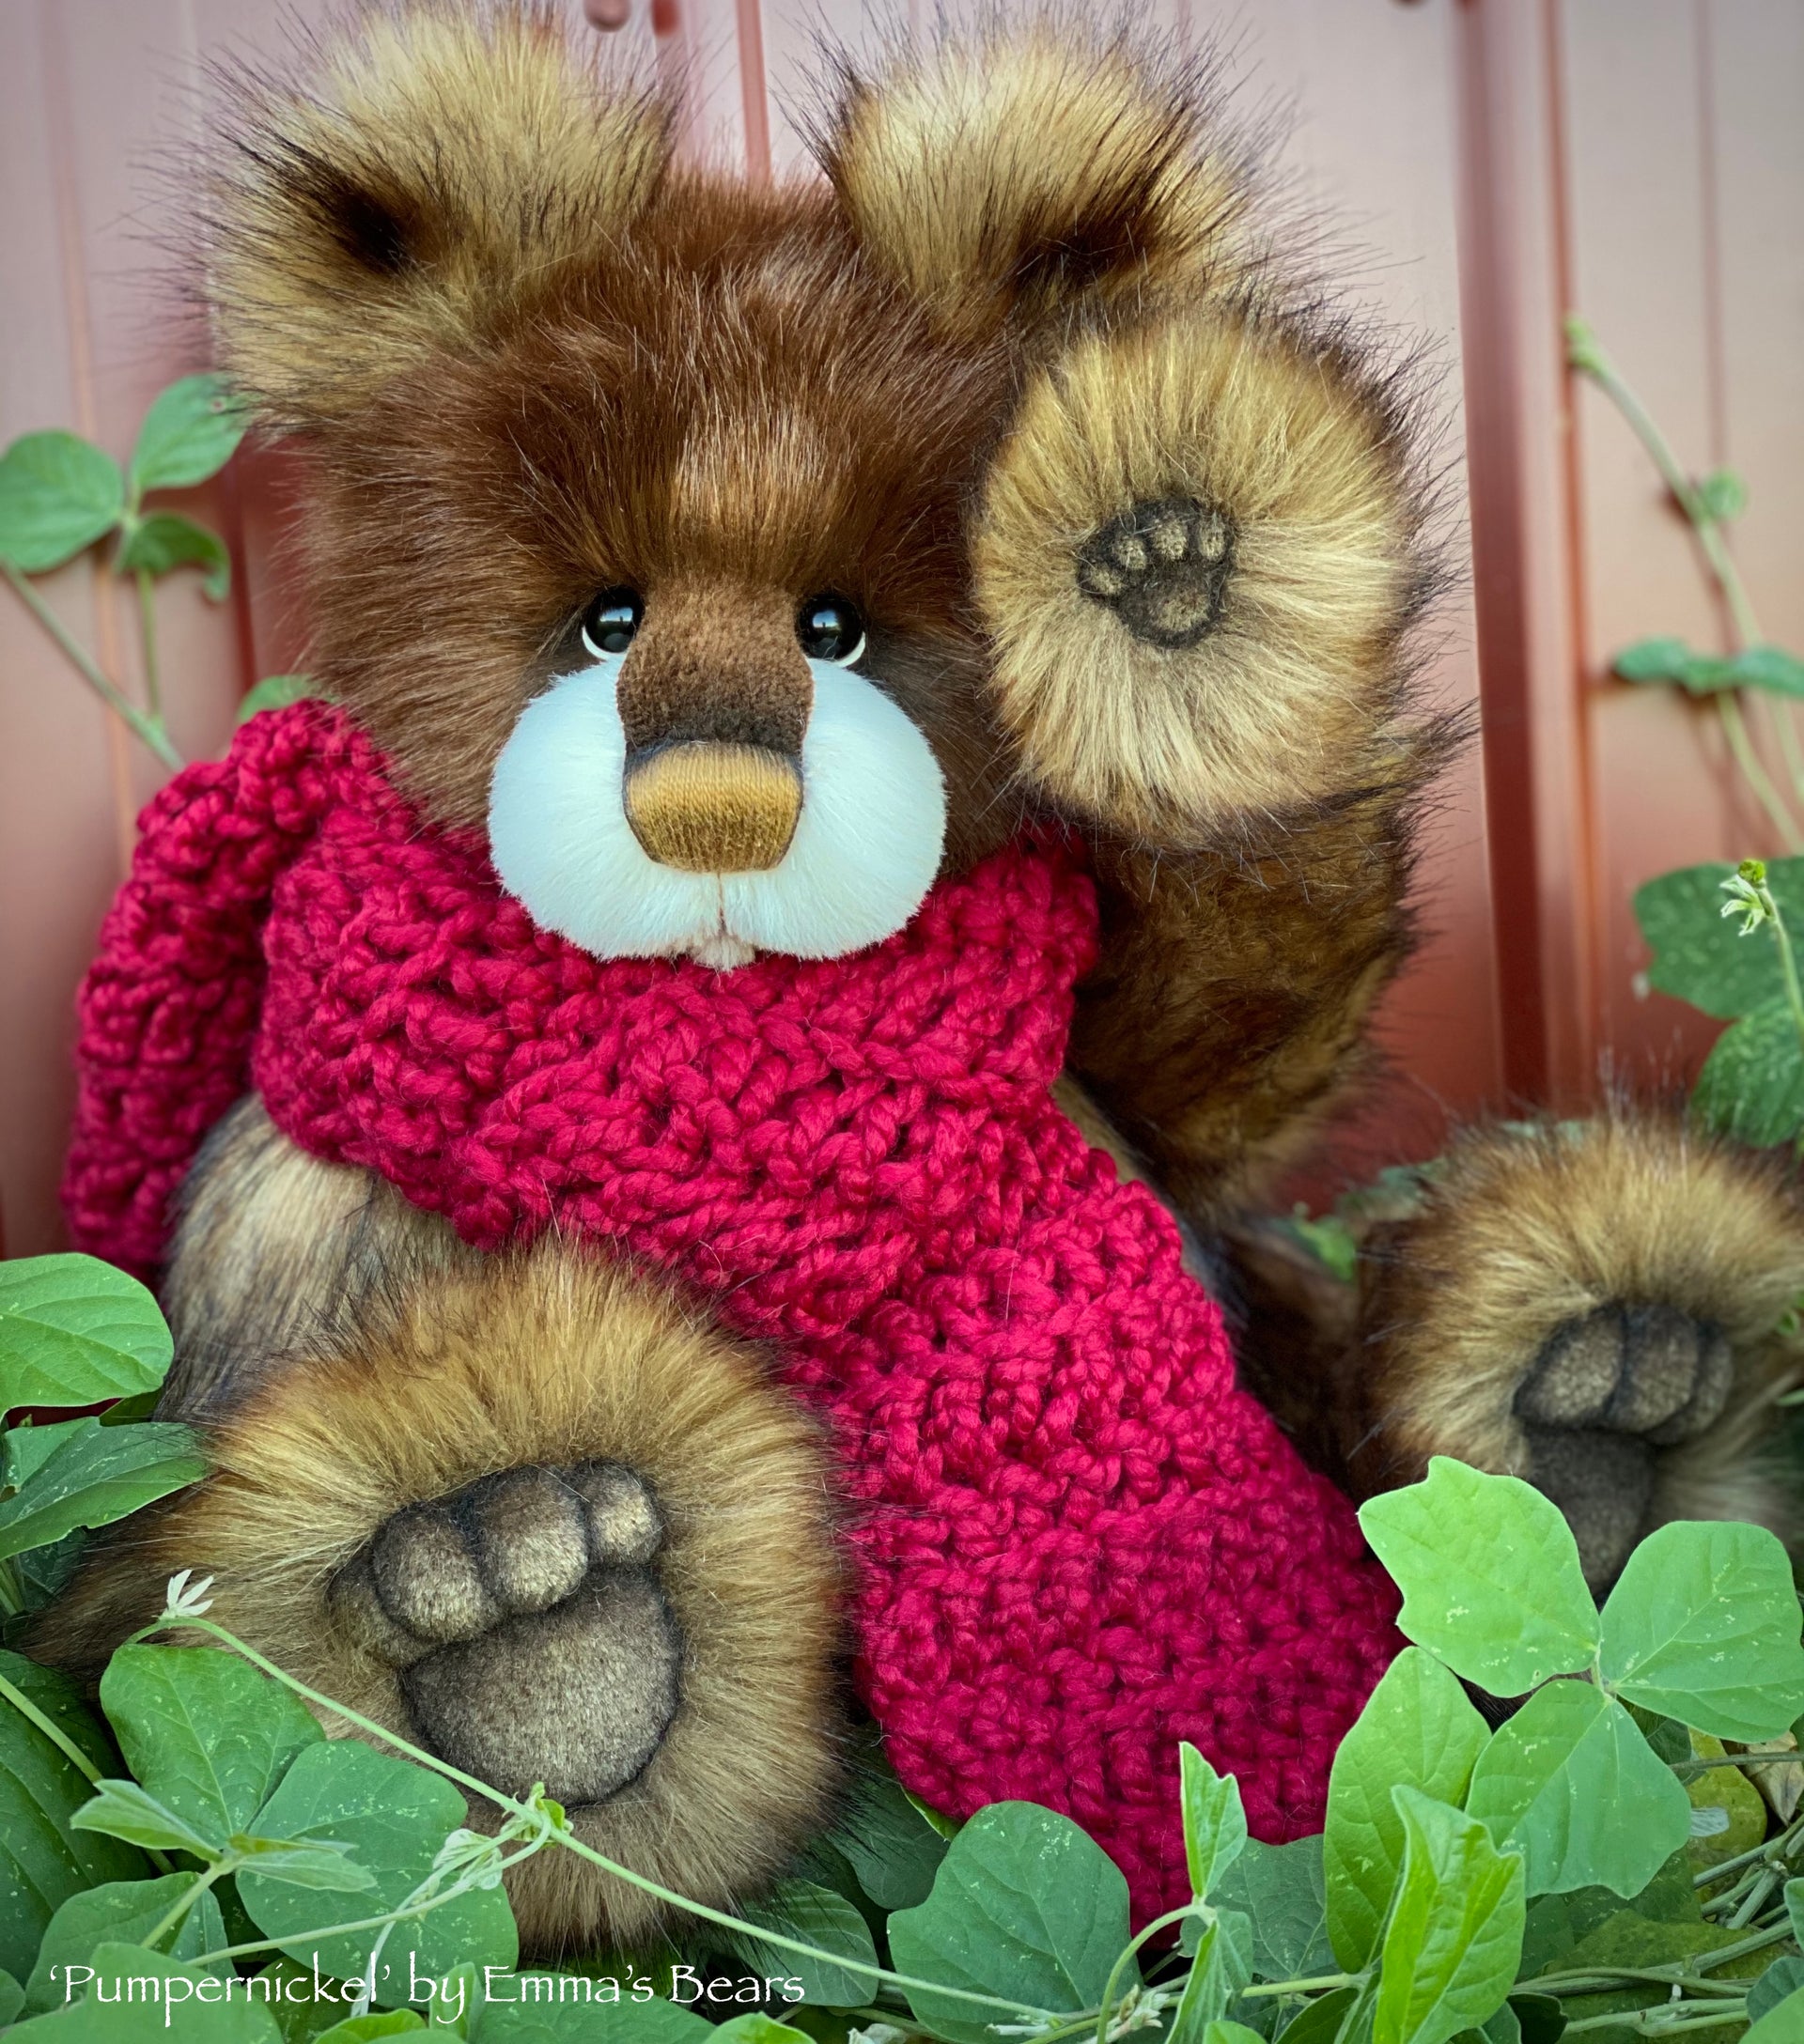 Pumpernickel - 17" faux fur bear by Emmas Bears - OOAK